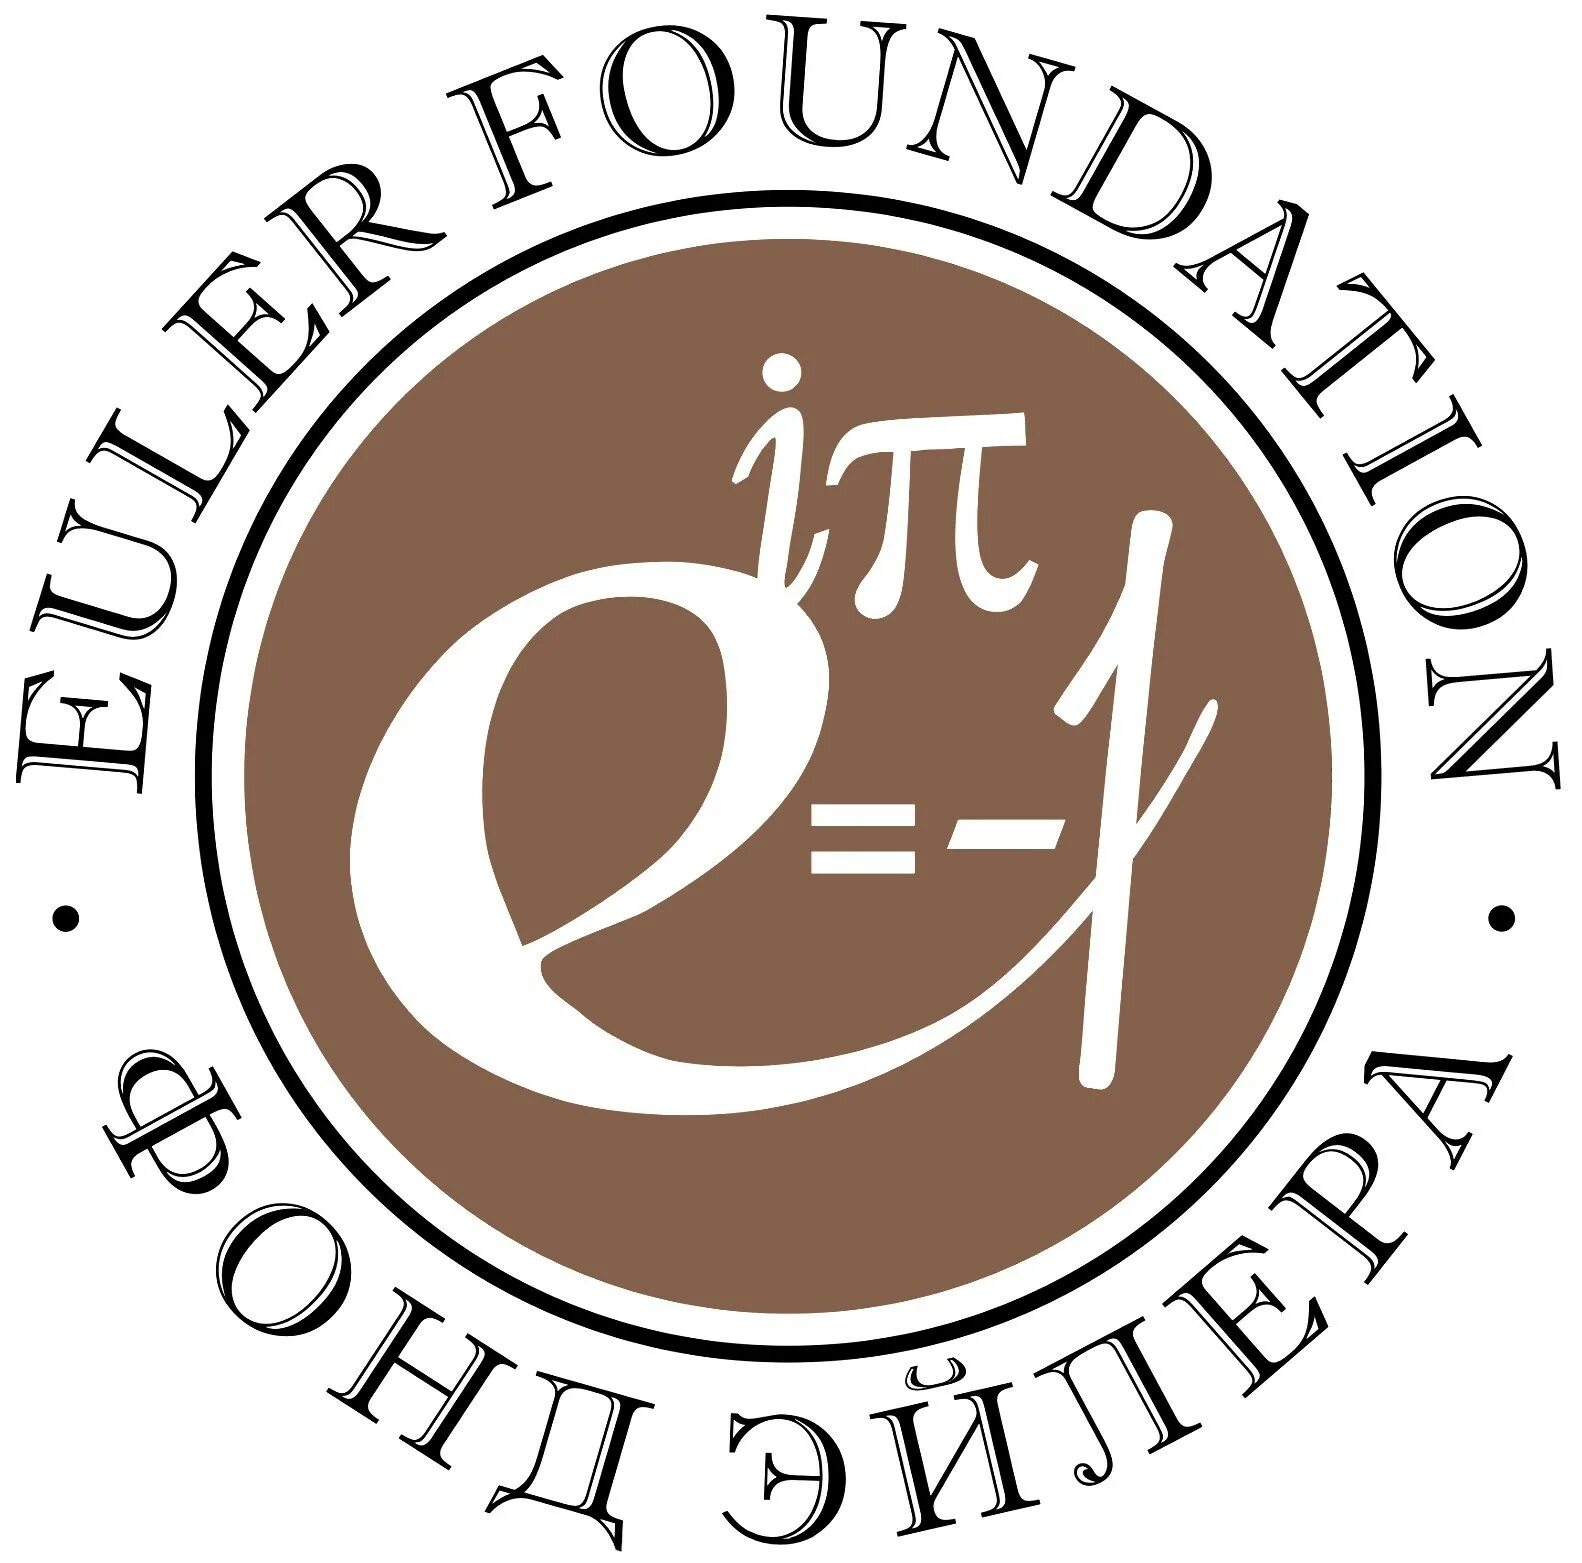 Международный благотворительный фонд. Международный математический институт имени Эйлера. Международный математический институт имени Эйлера лого. W.Euler логотип.